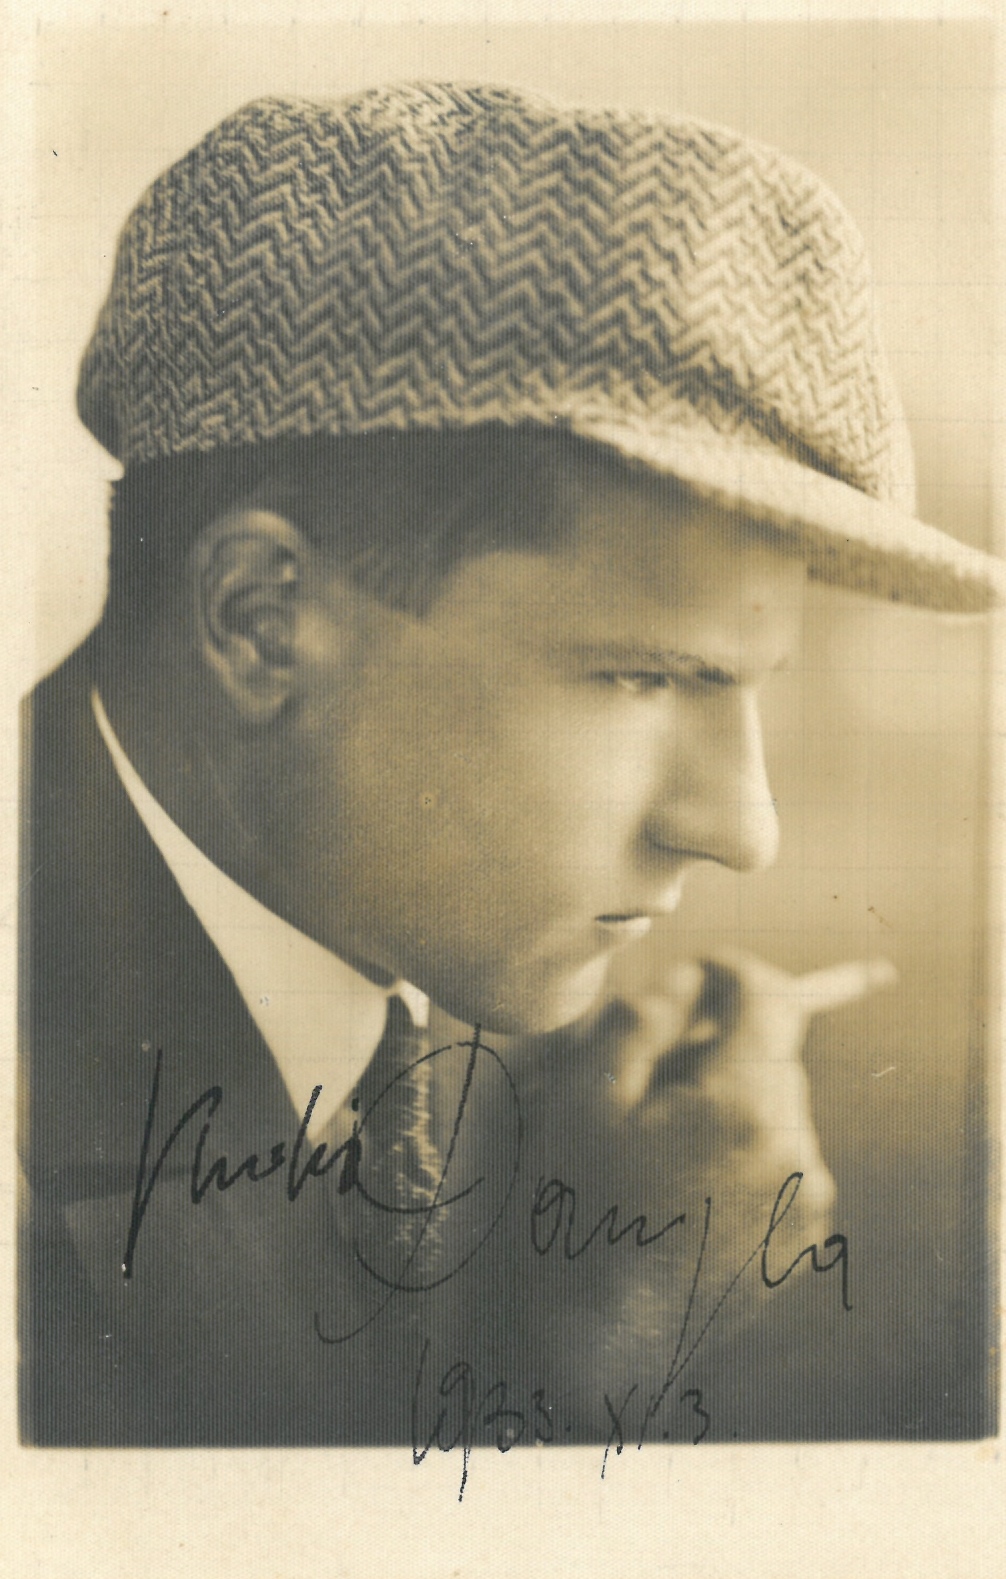 Portretinė. Albinas Vaitkus (Juodis Danyla). 1933 m. lapkričio 3 d. 